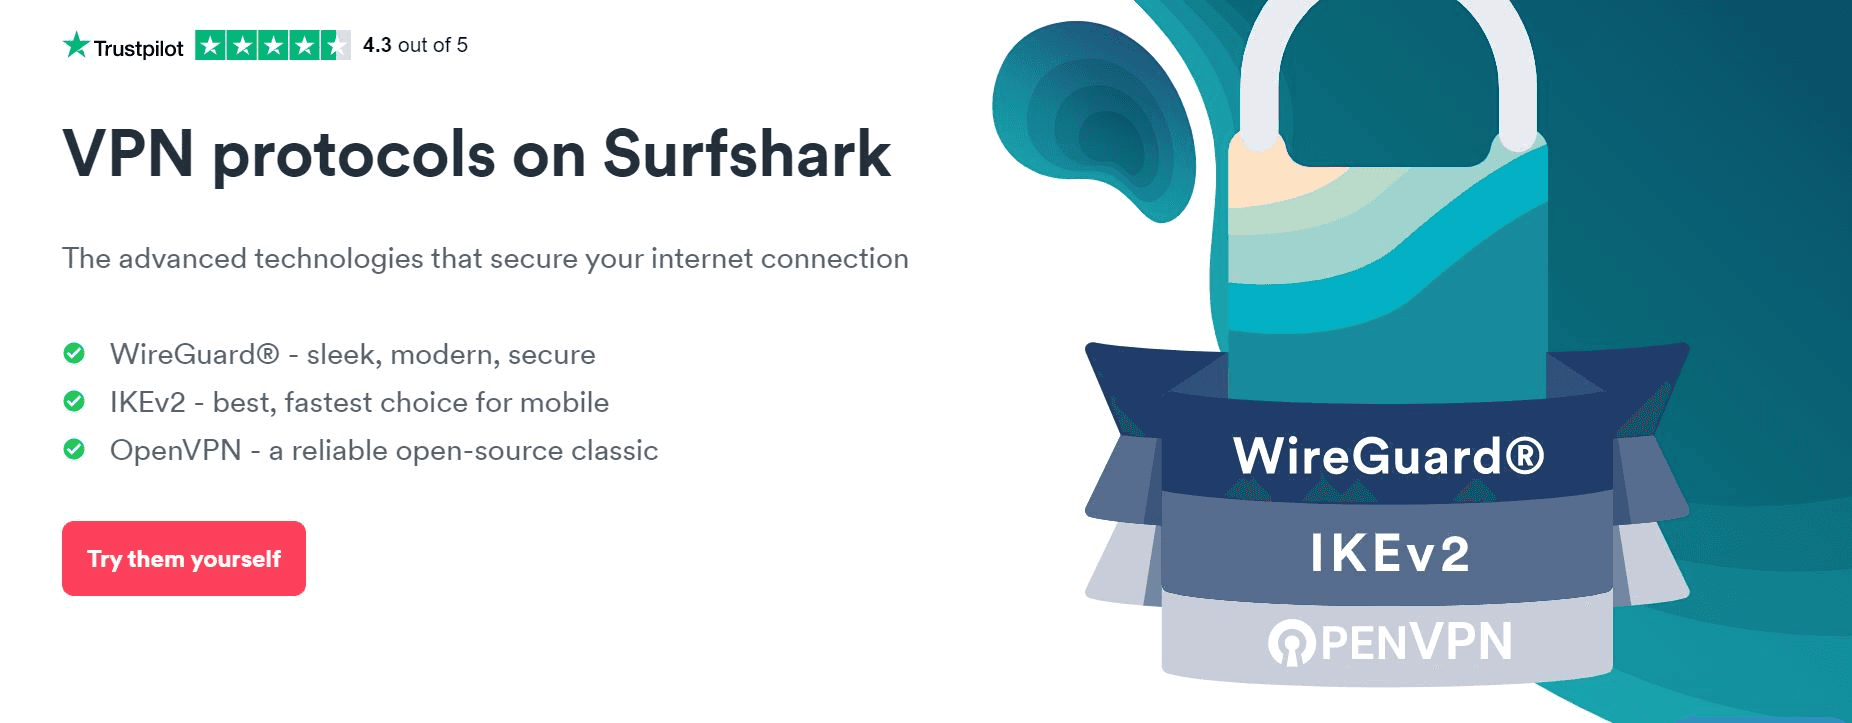 Surfshark secure protocols